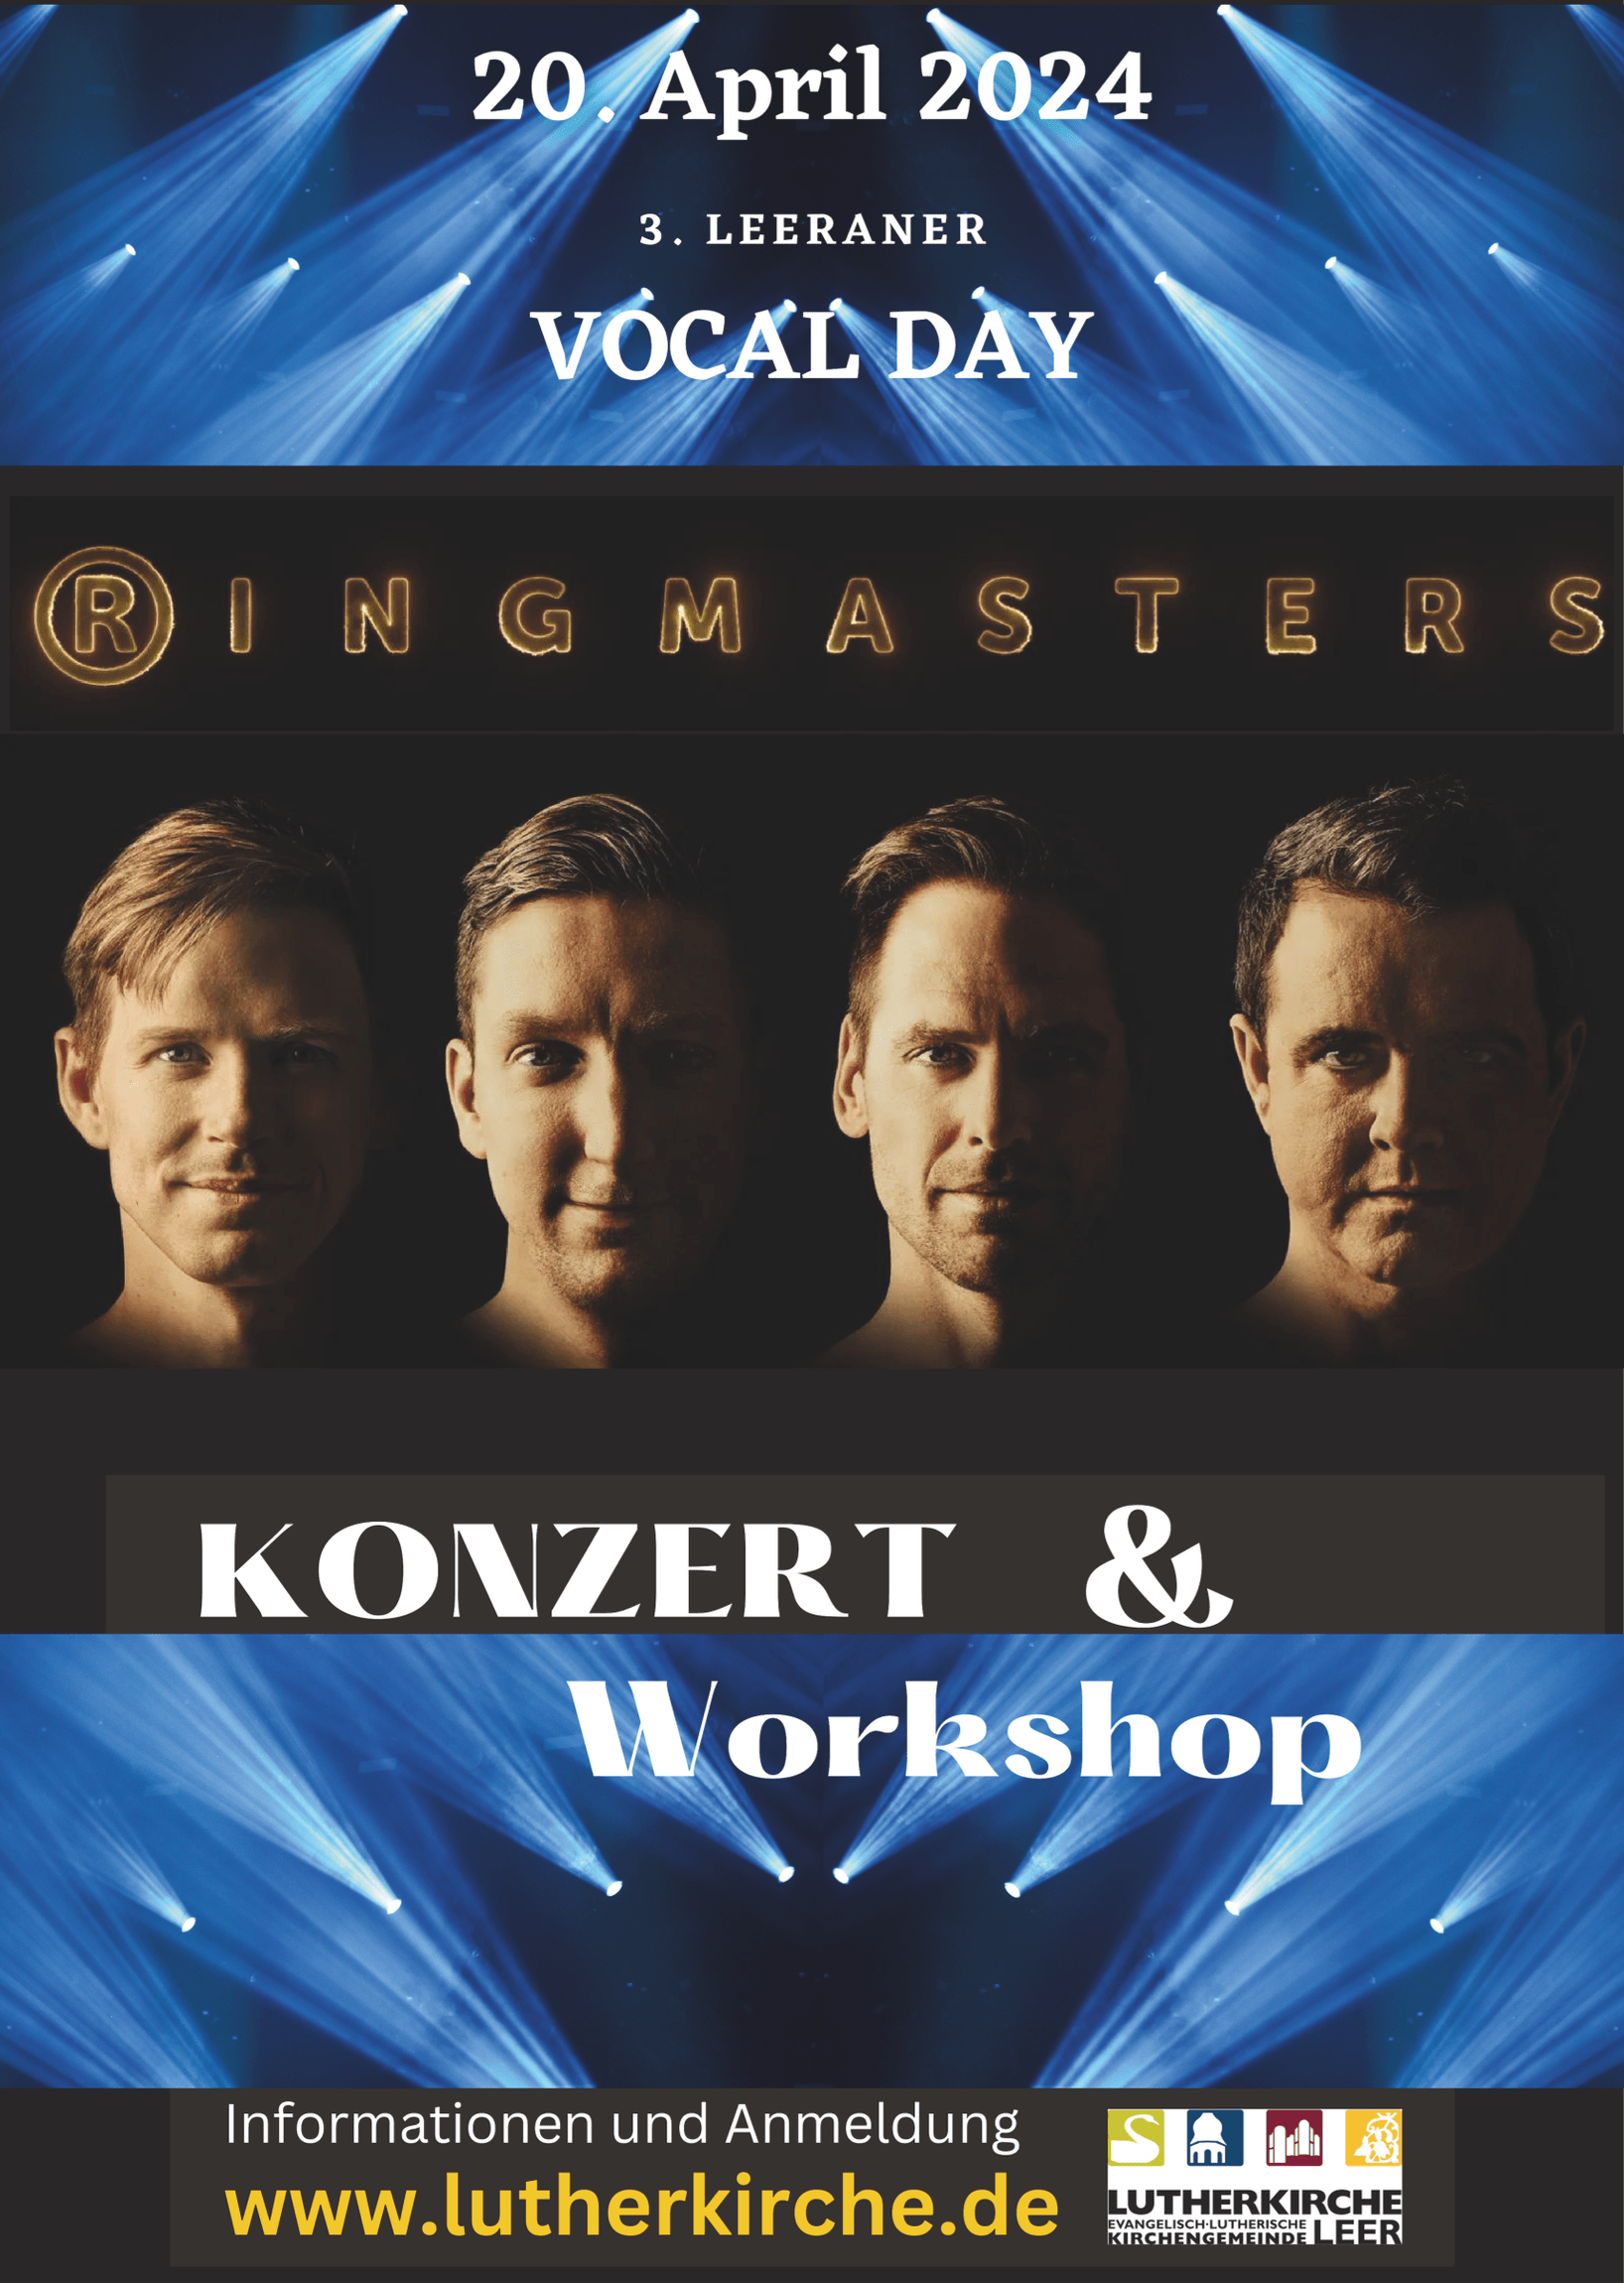 Workshop und Konzert mit Ringasters